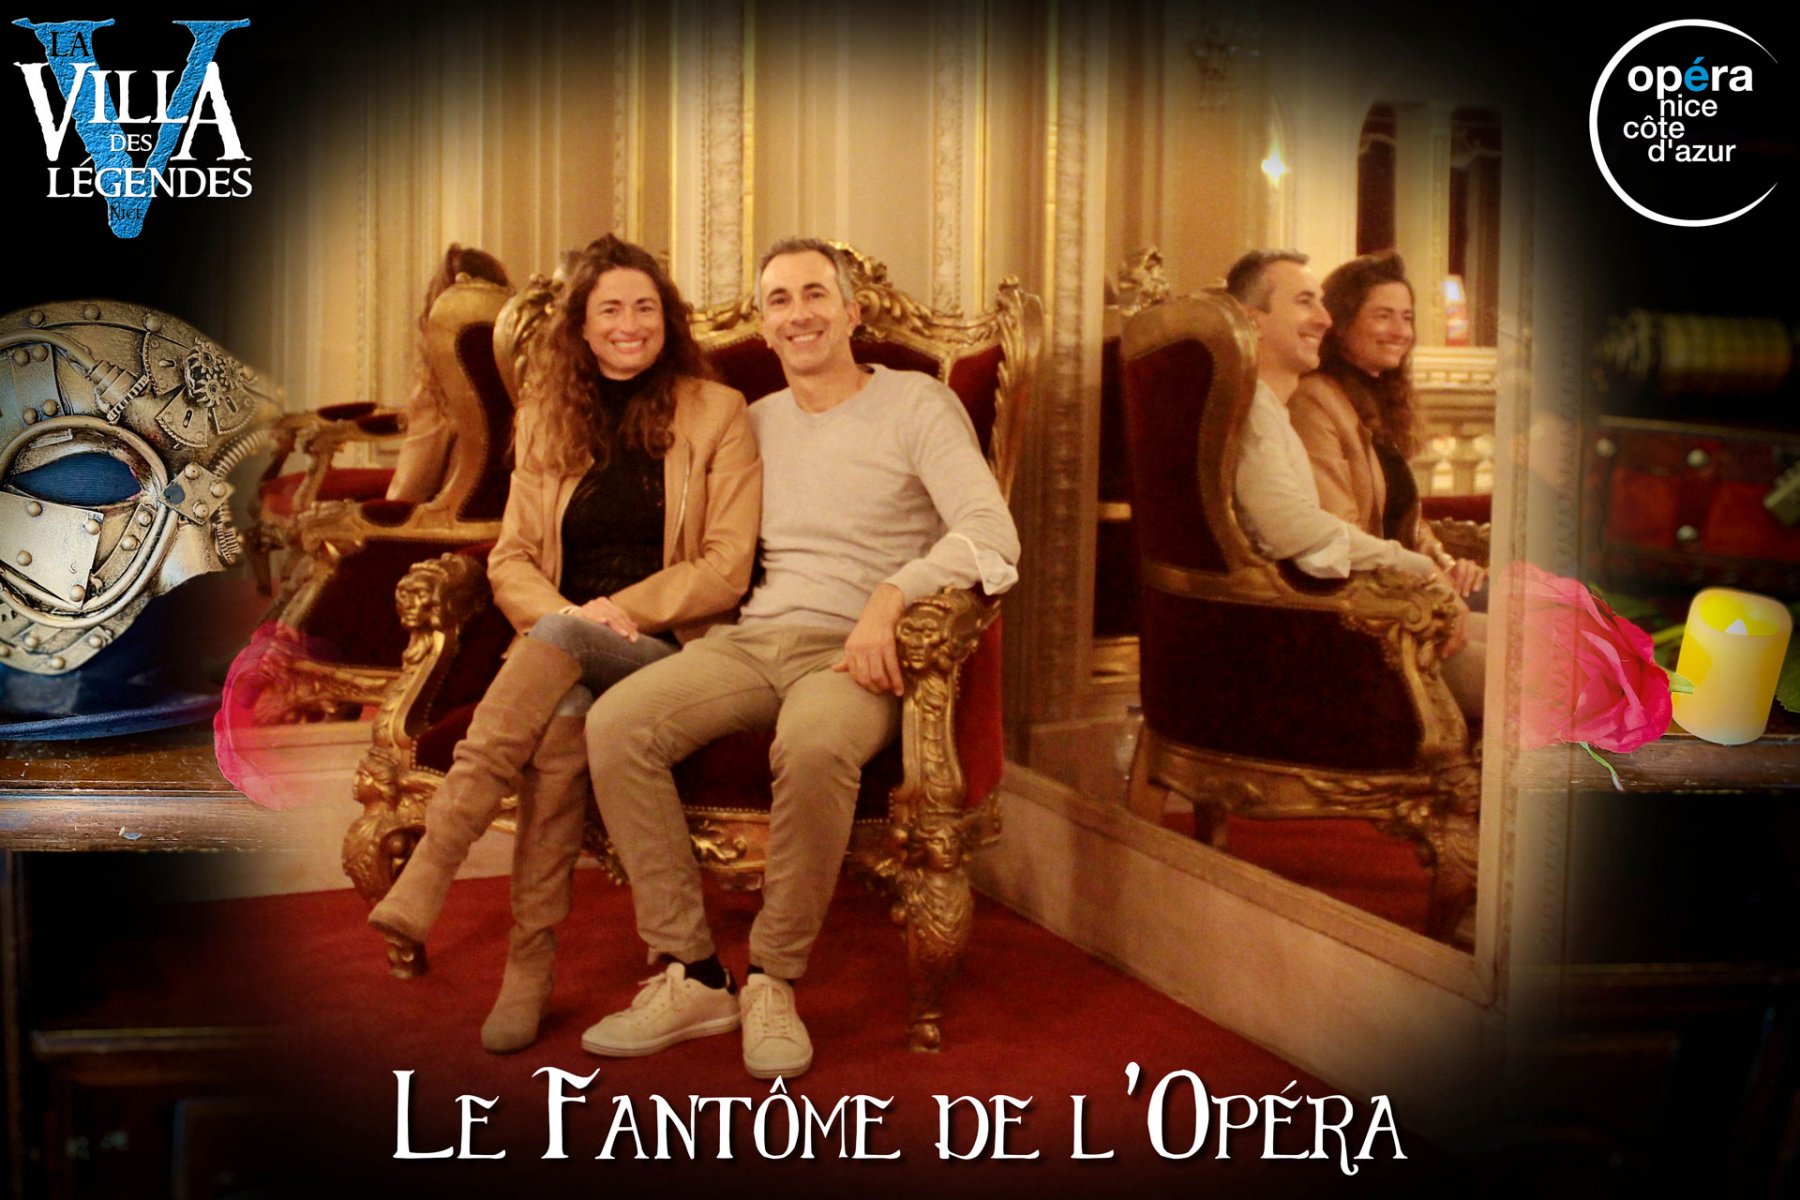 Le_Fantome_de_lOpera-Photos_Joueurs-17_nov_2021-La_Villa_des_Legendes-Opera_de_Nice-groupe_04